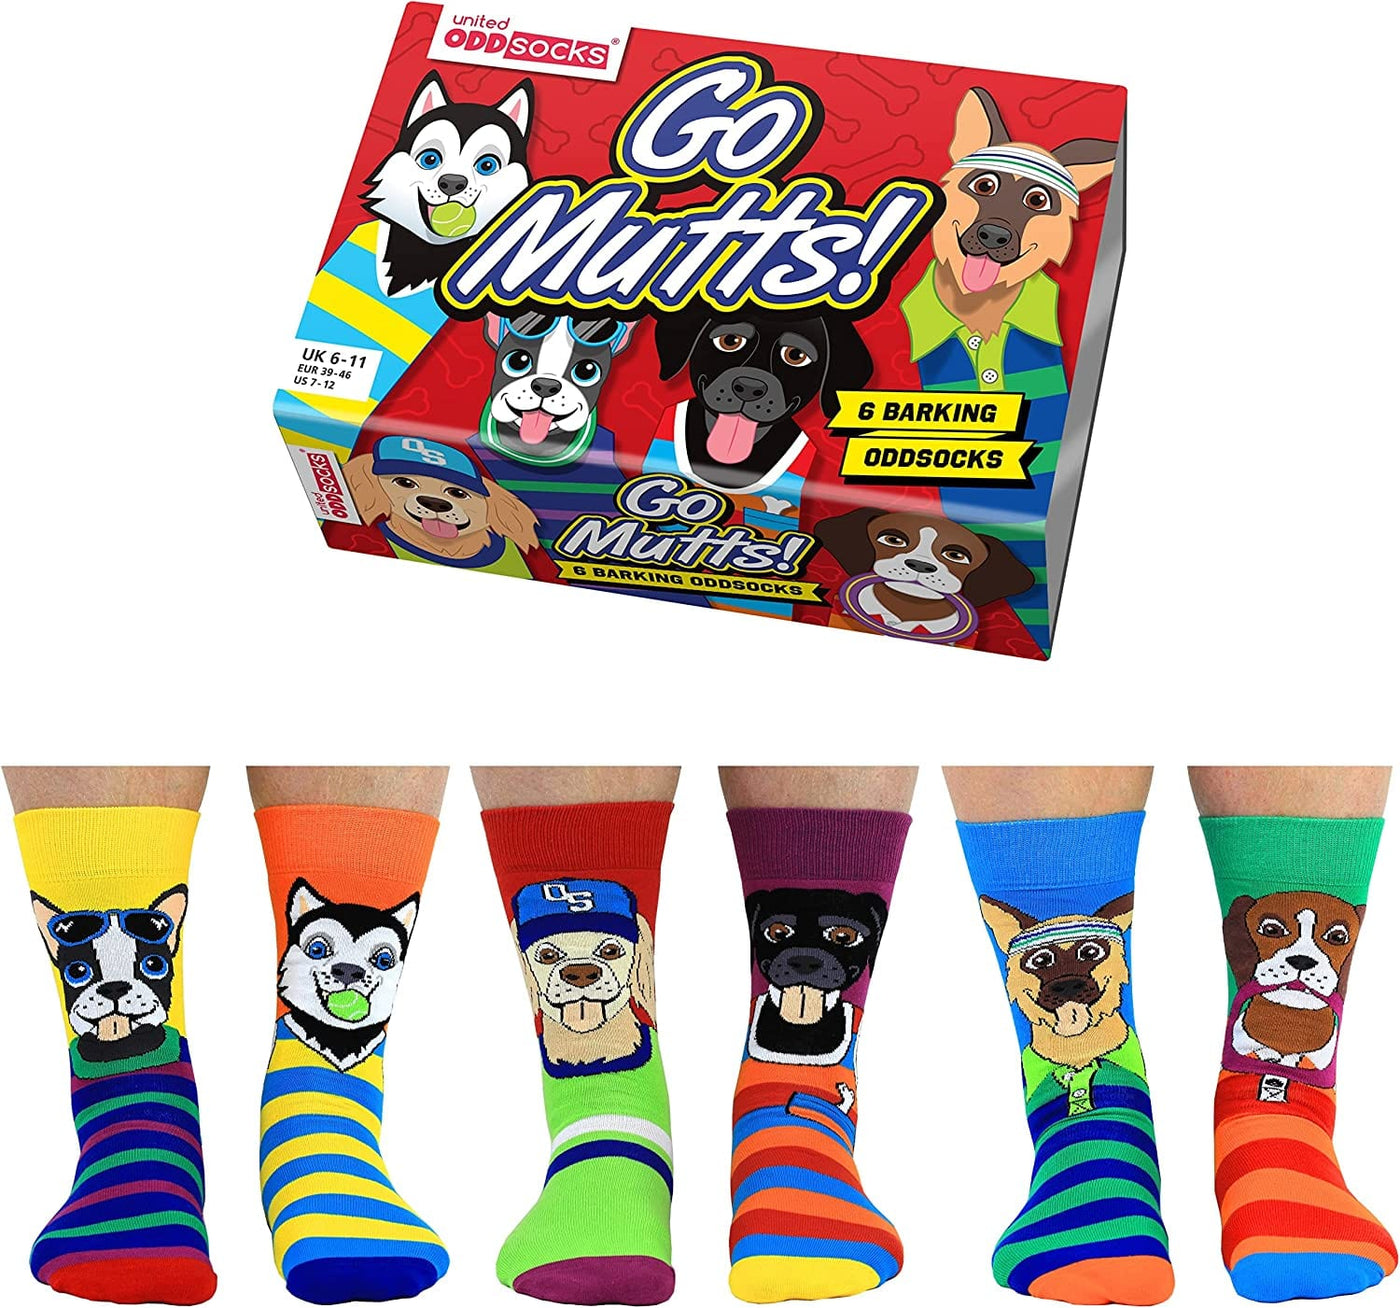 United Odd Socks Socks Go Mutts Novelty Dog Themed Men's Socks